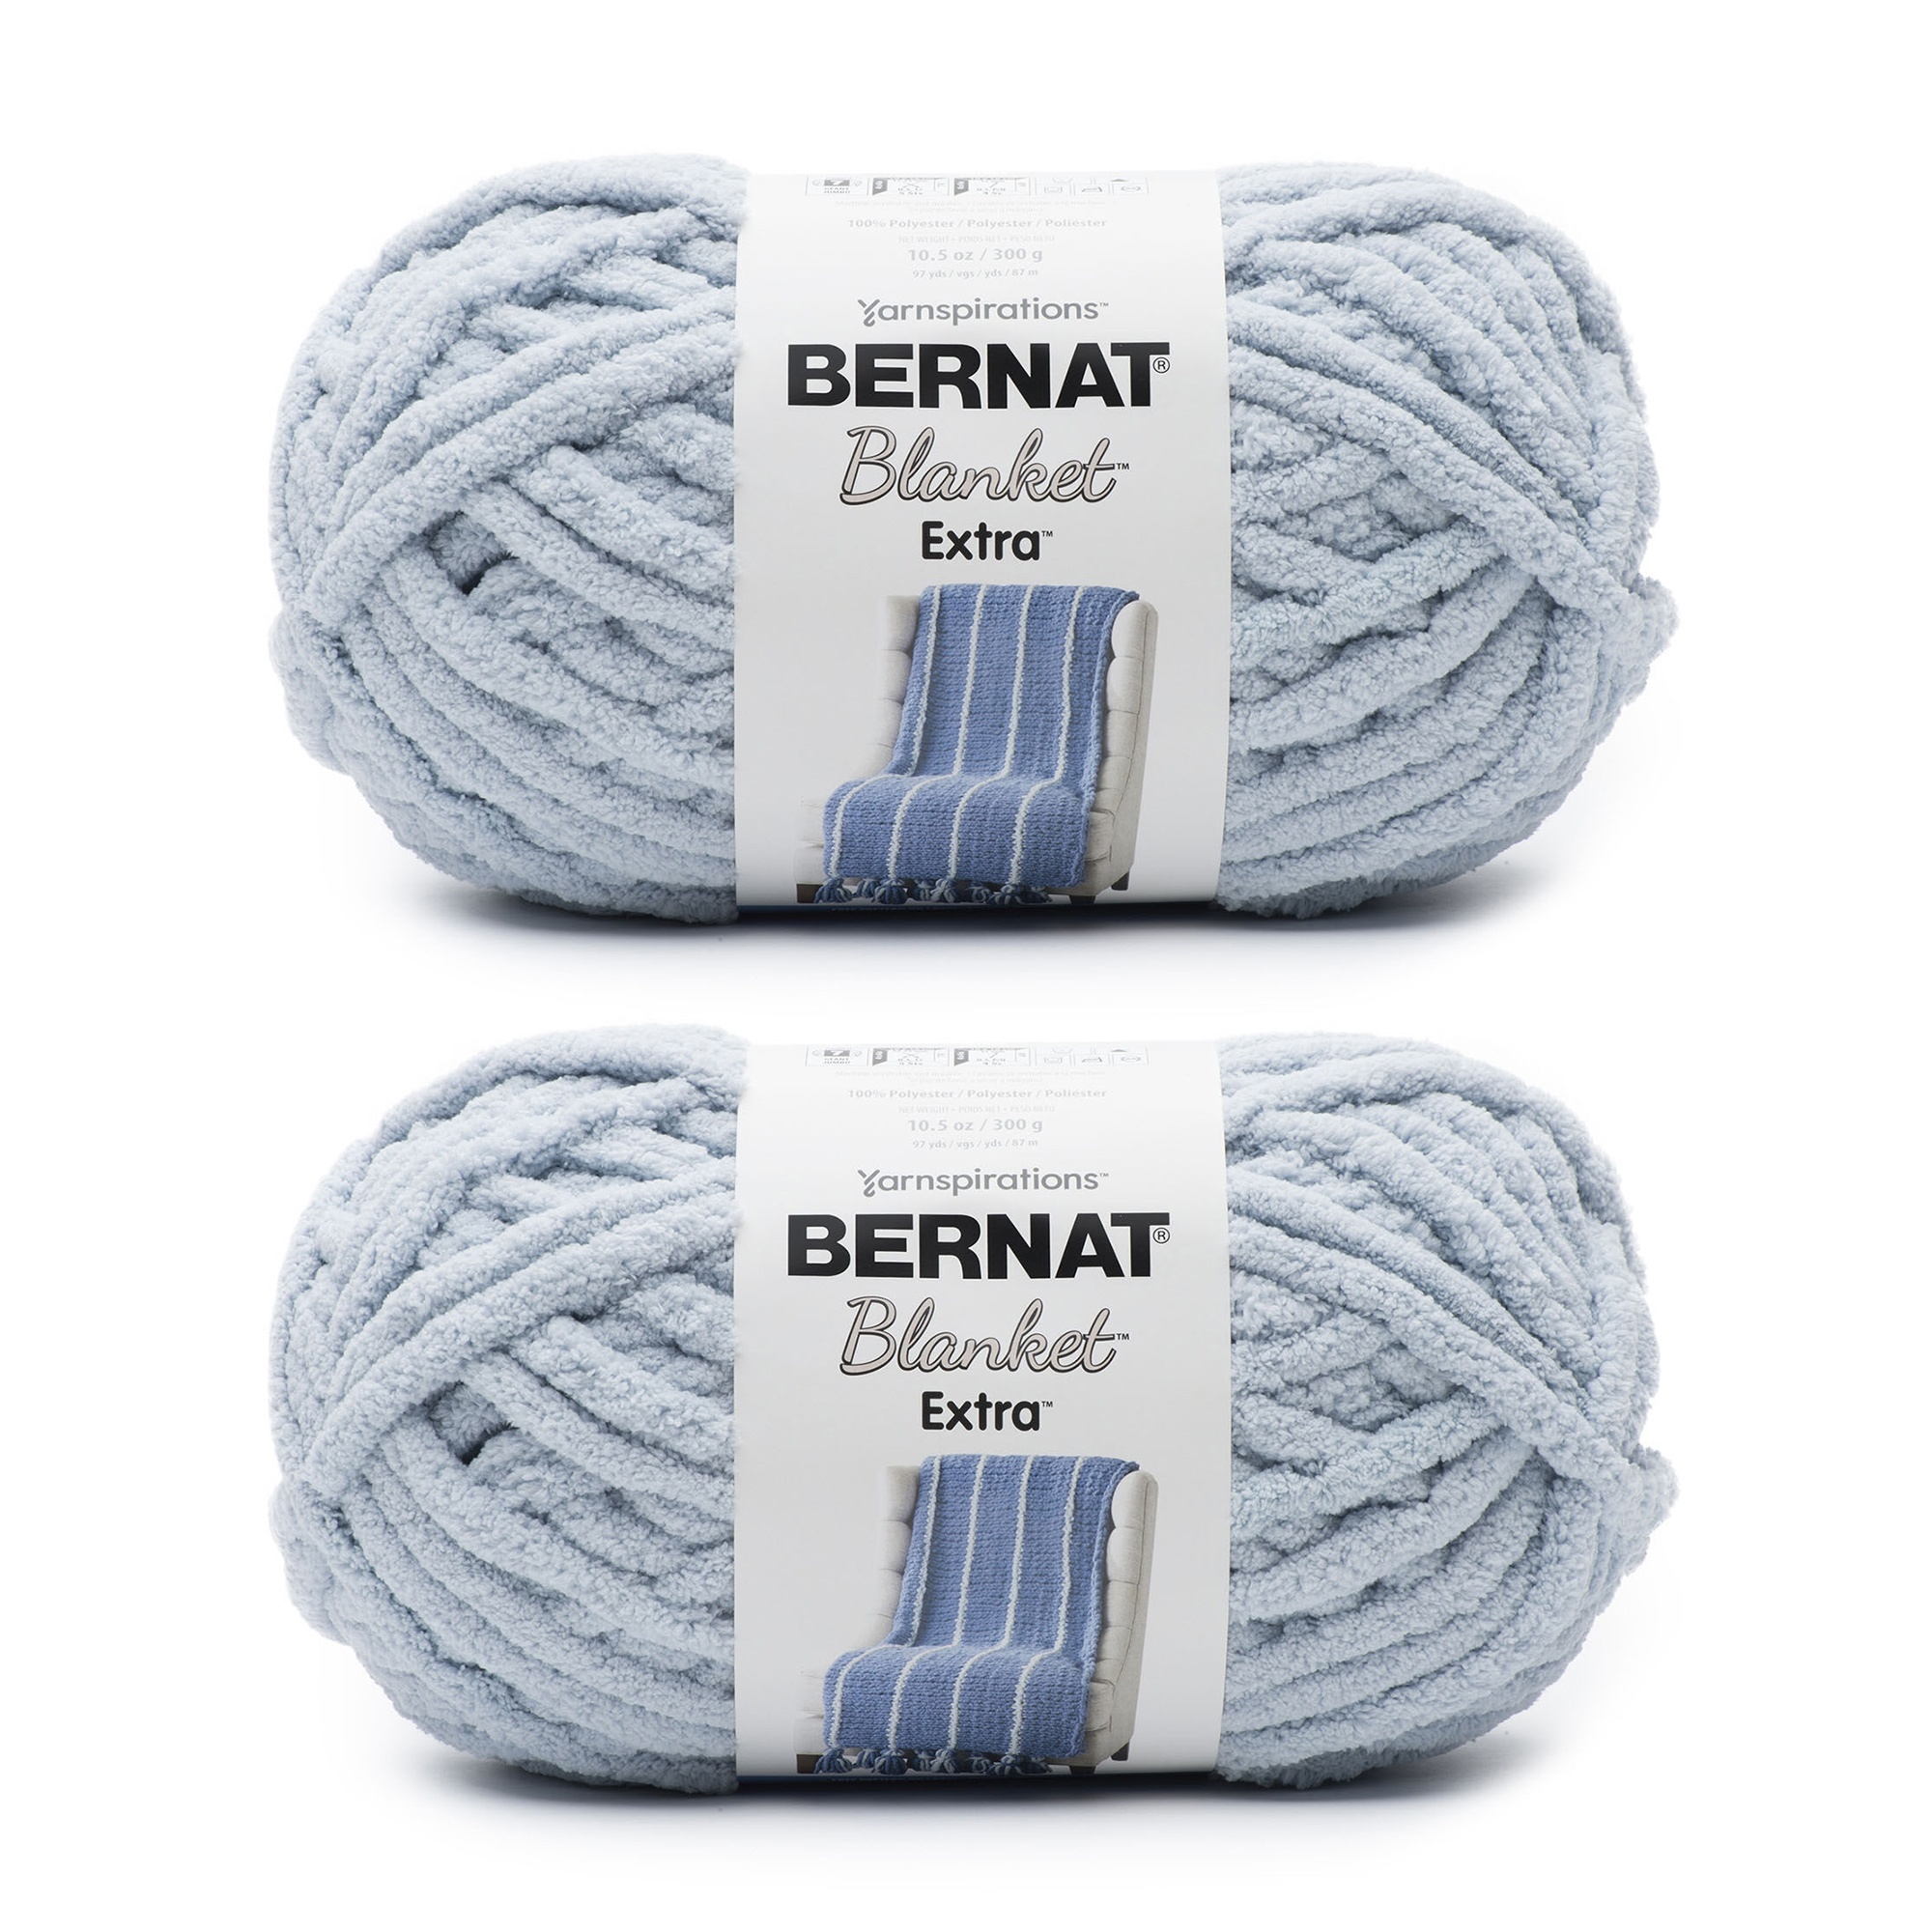 Bernat Blanket Extra Softened Blue Yarn - 2 Pack of 300g/10.5oz - Polyester  - 7 Jumbo - 97 Yards - Knitting/Crochet